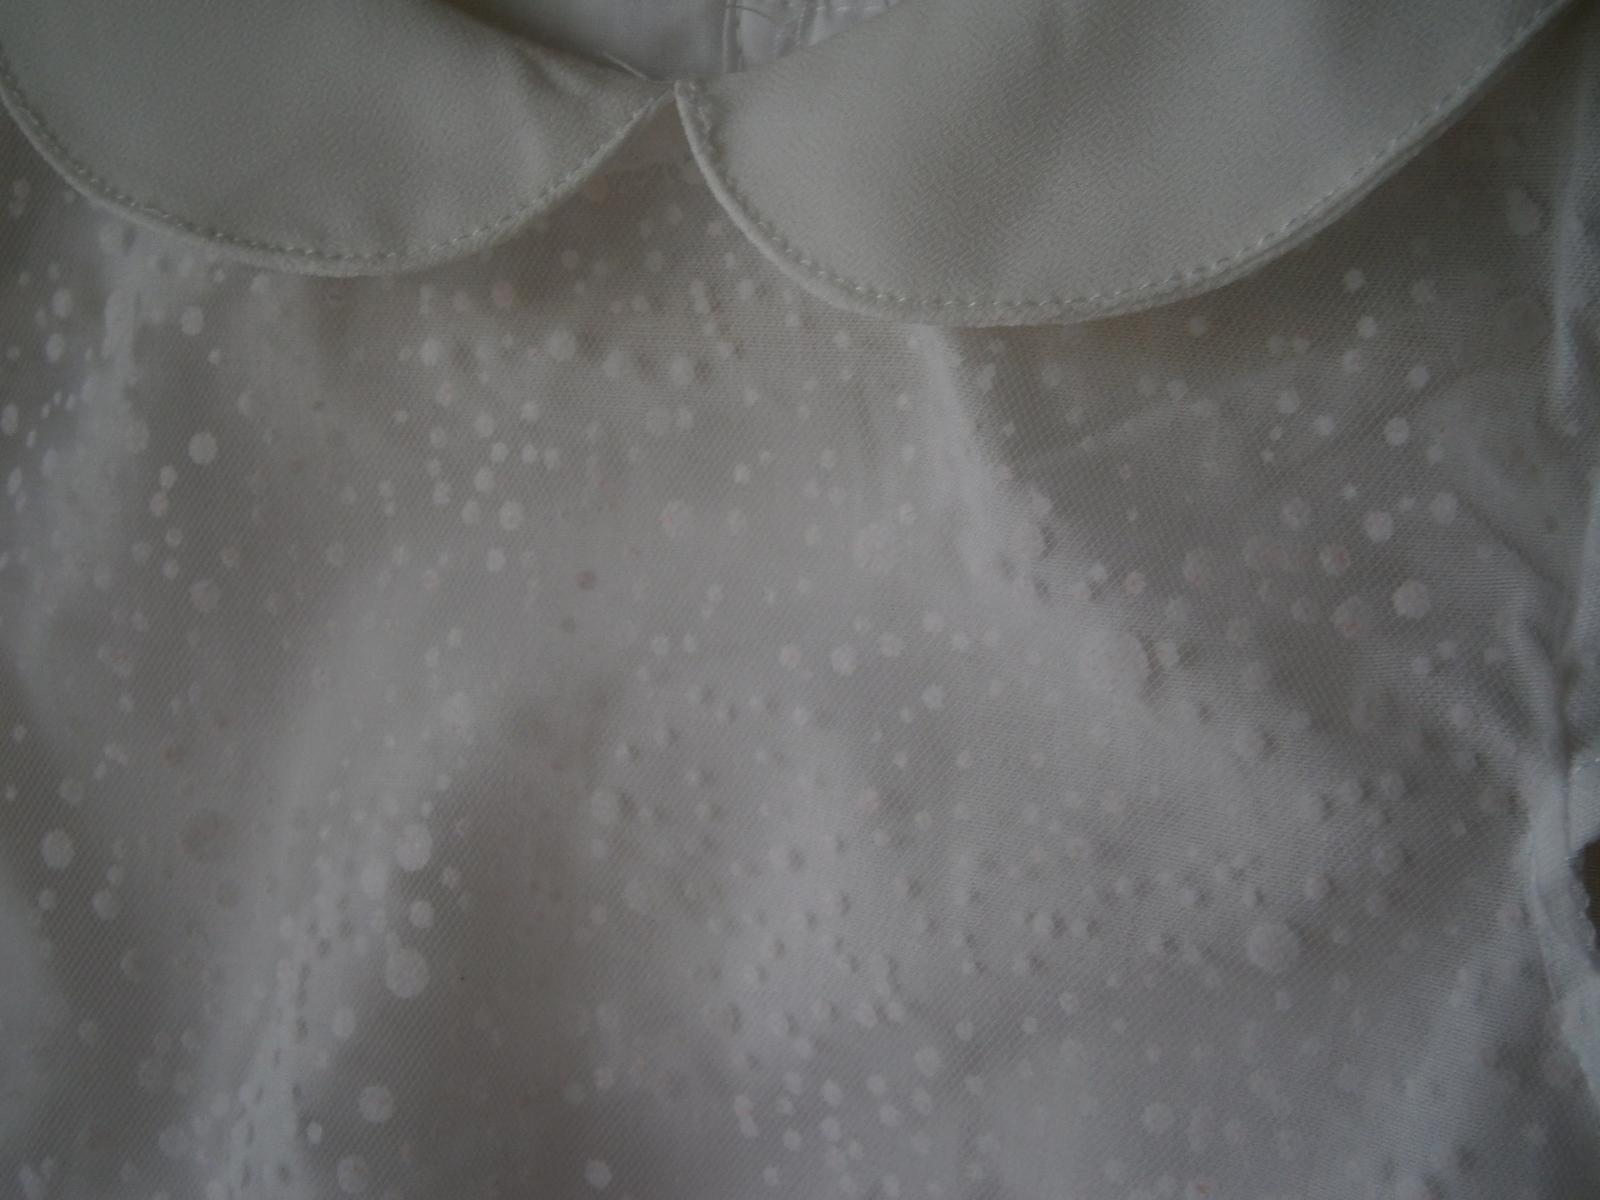 Bílé šatičky s krátkým rukávem - Obrázek č. 2